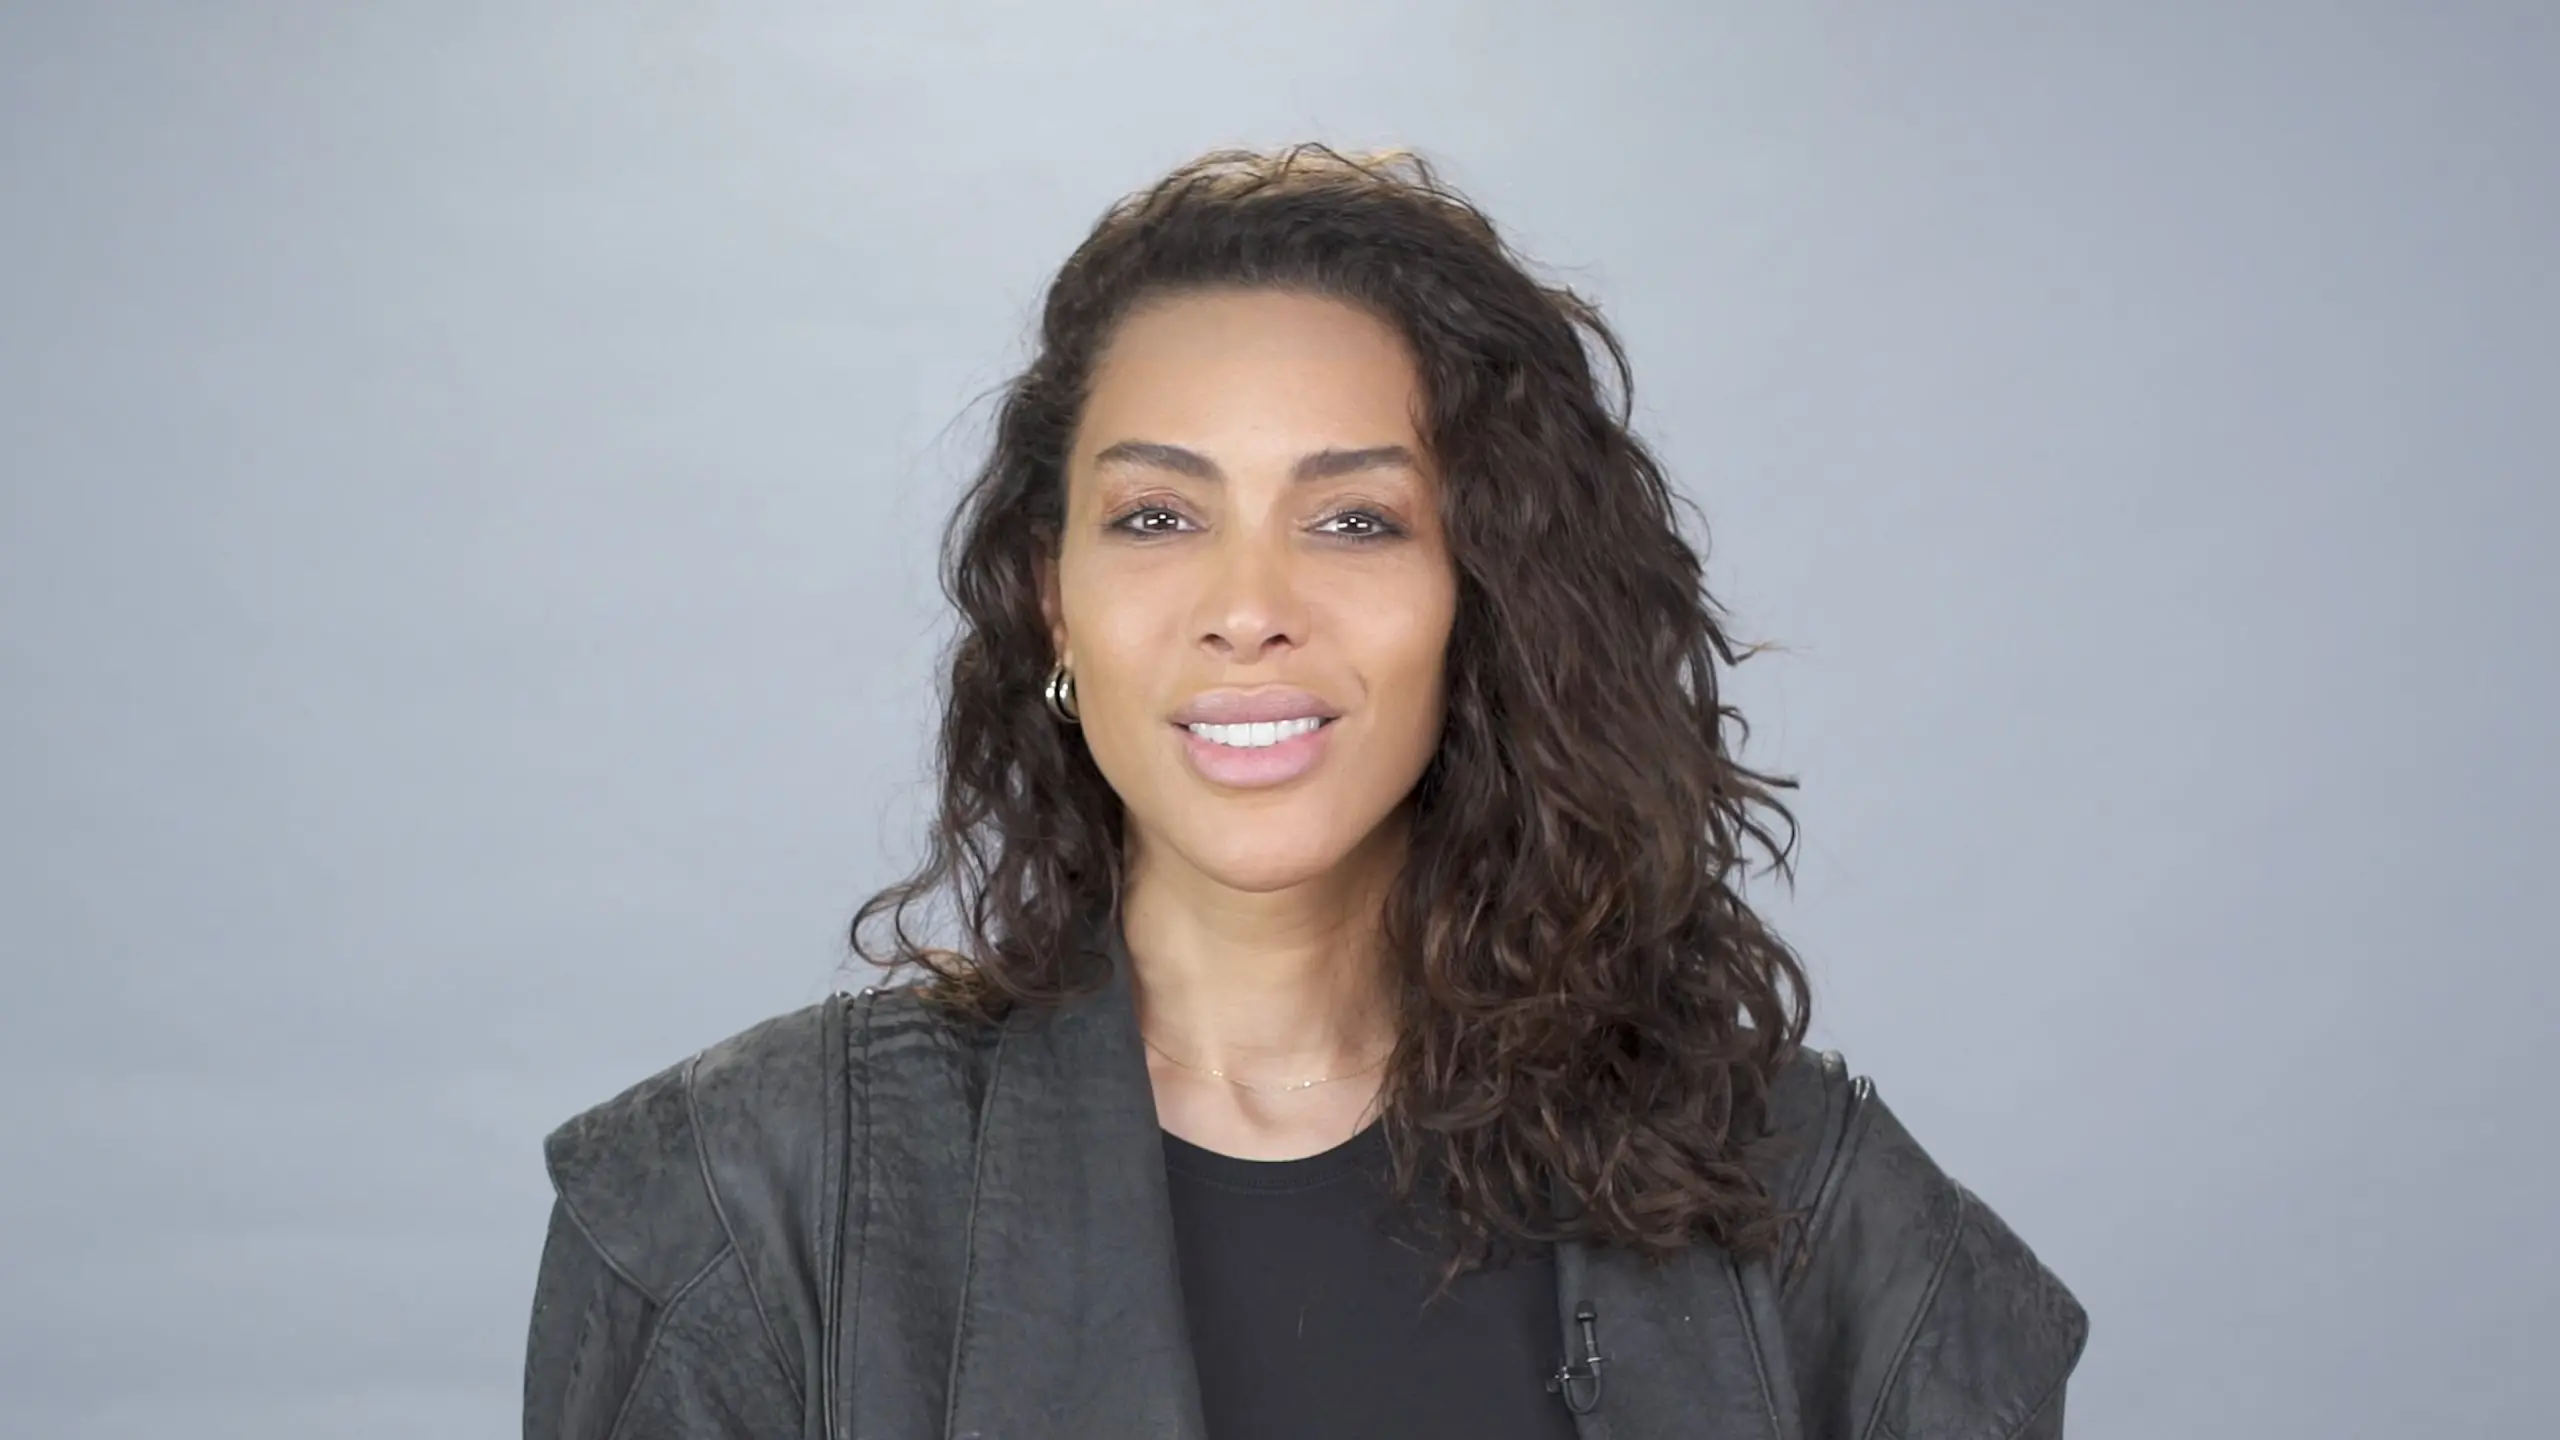 Vidéo : le mannequin Inès Rau nous parle de sa transidentité